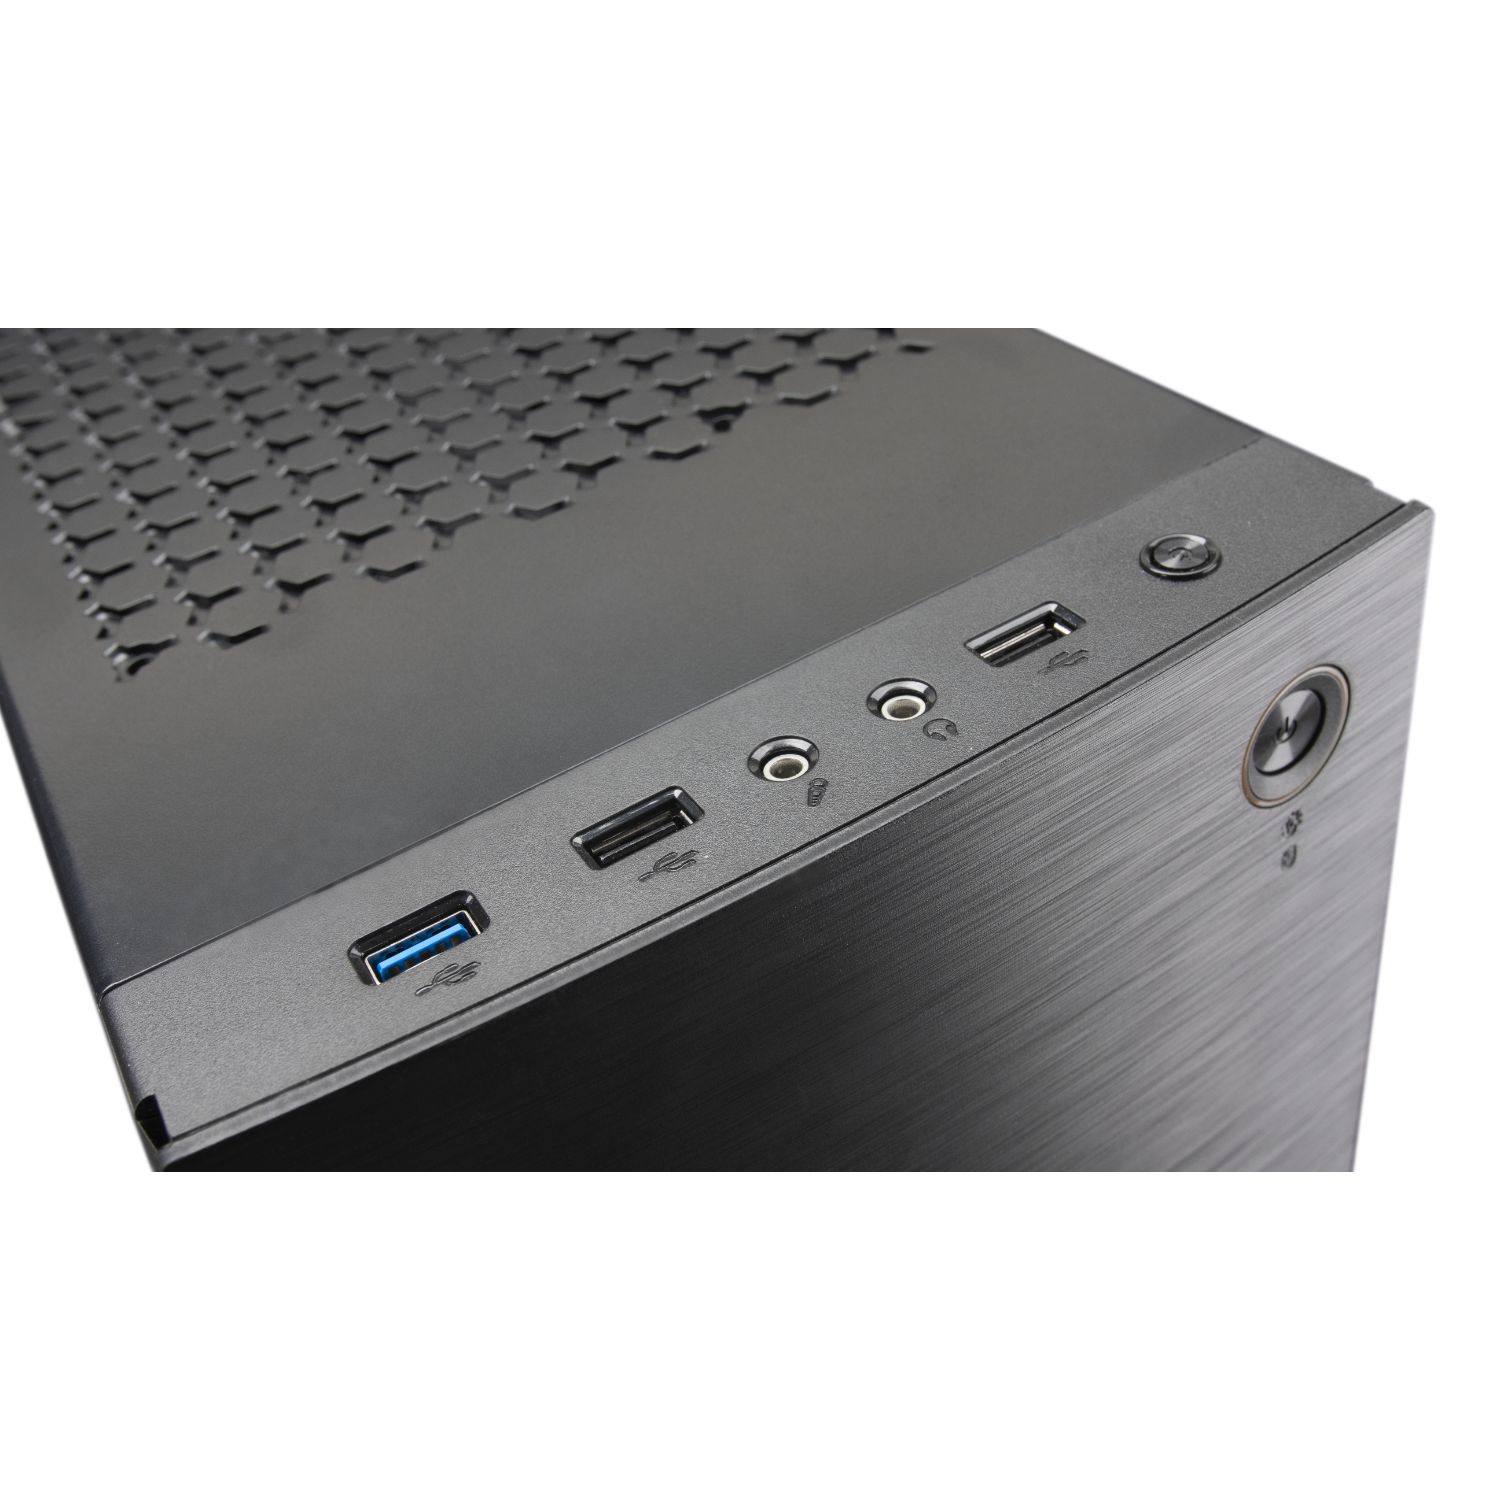 MC220 - Semitorre Mars Gaming RGB S/F USB2/USB3 (MC220)